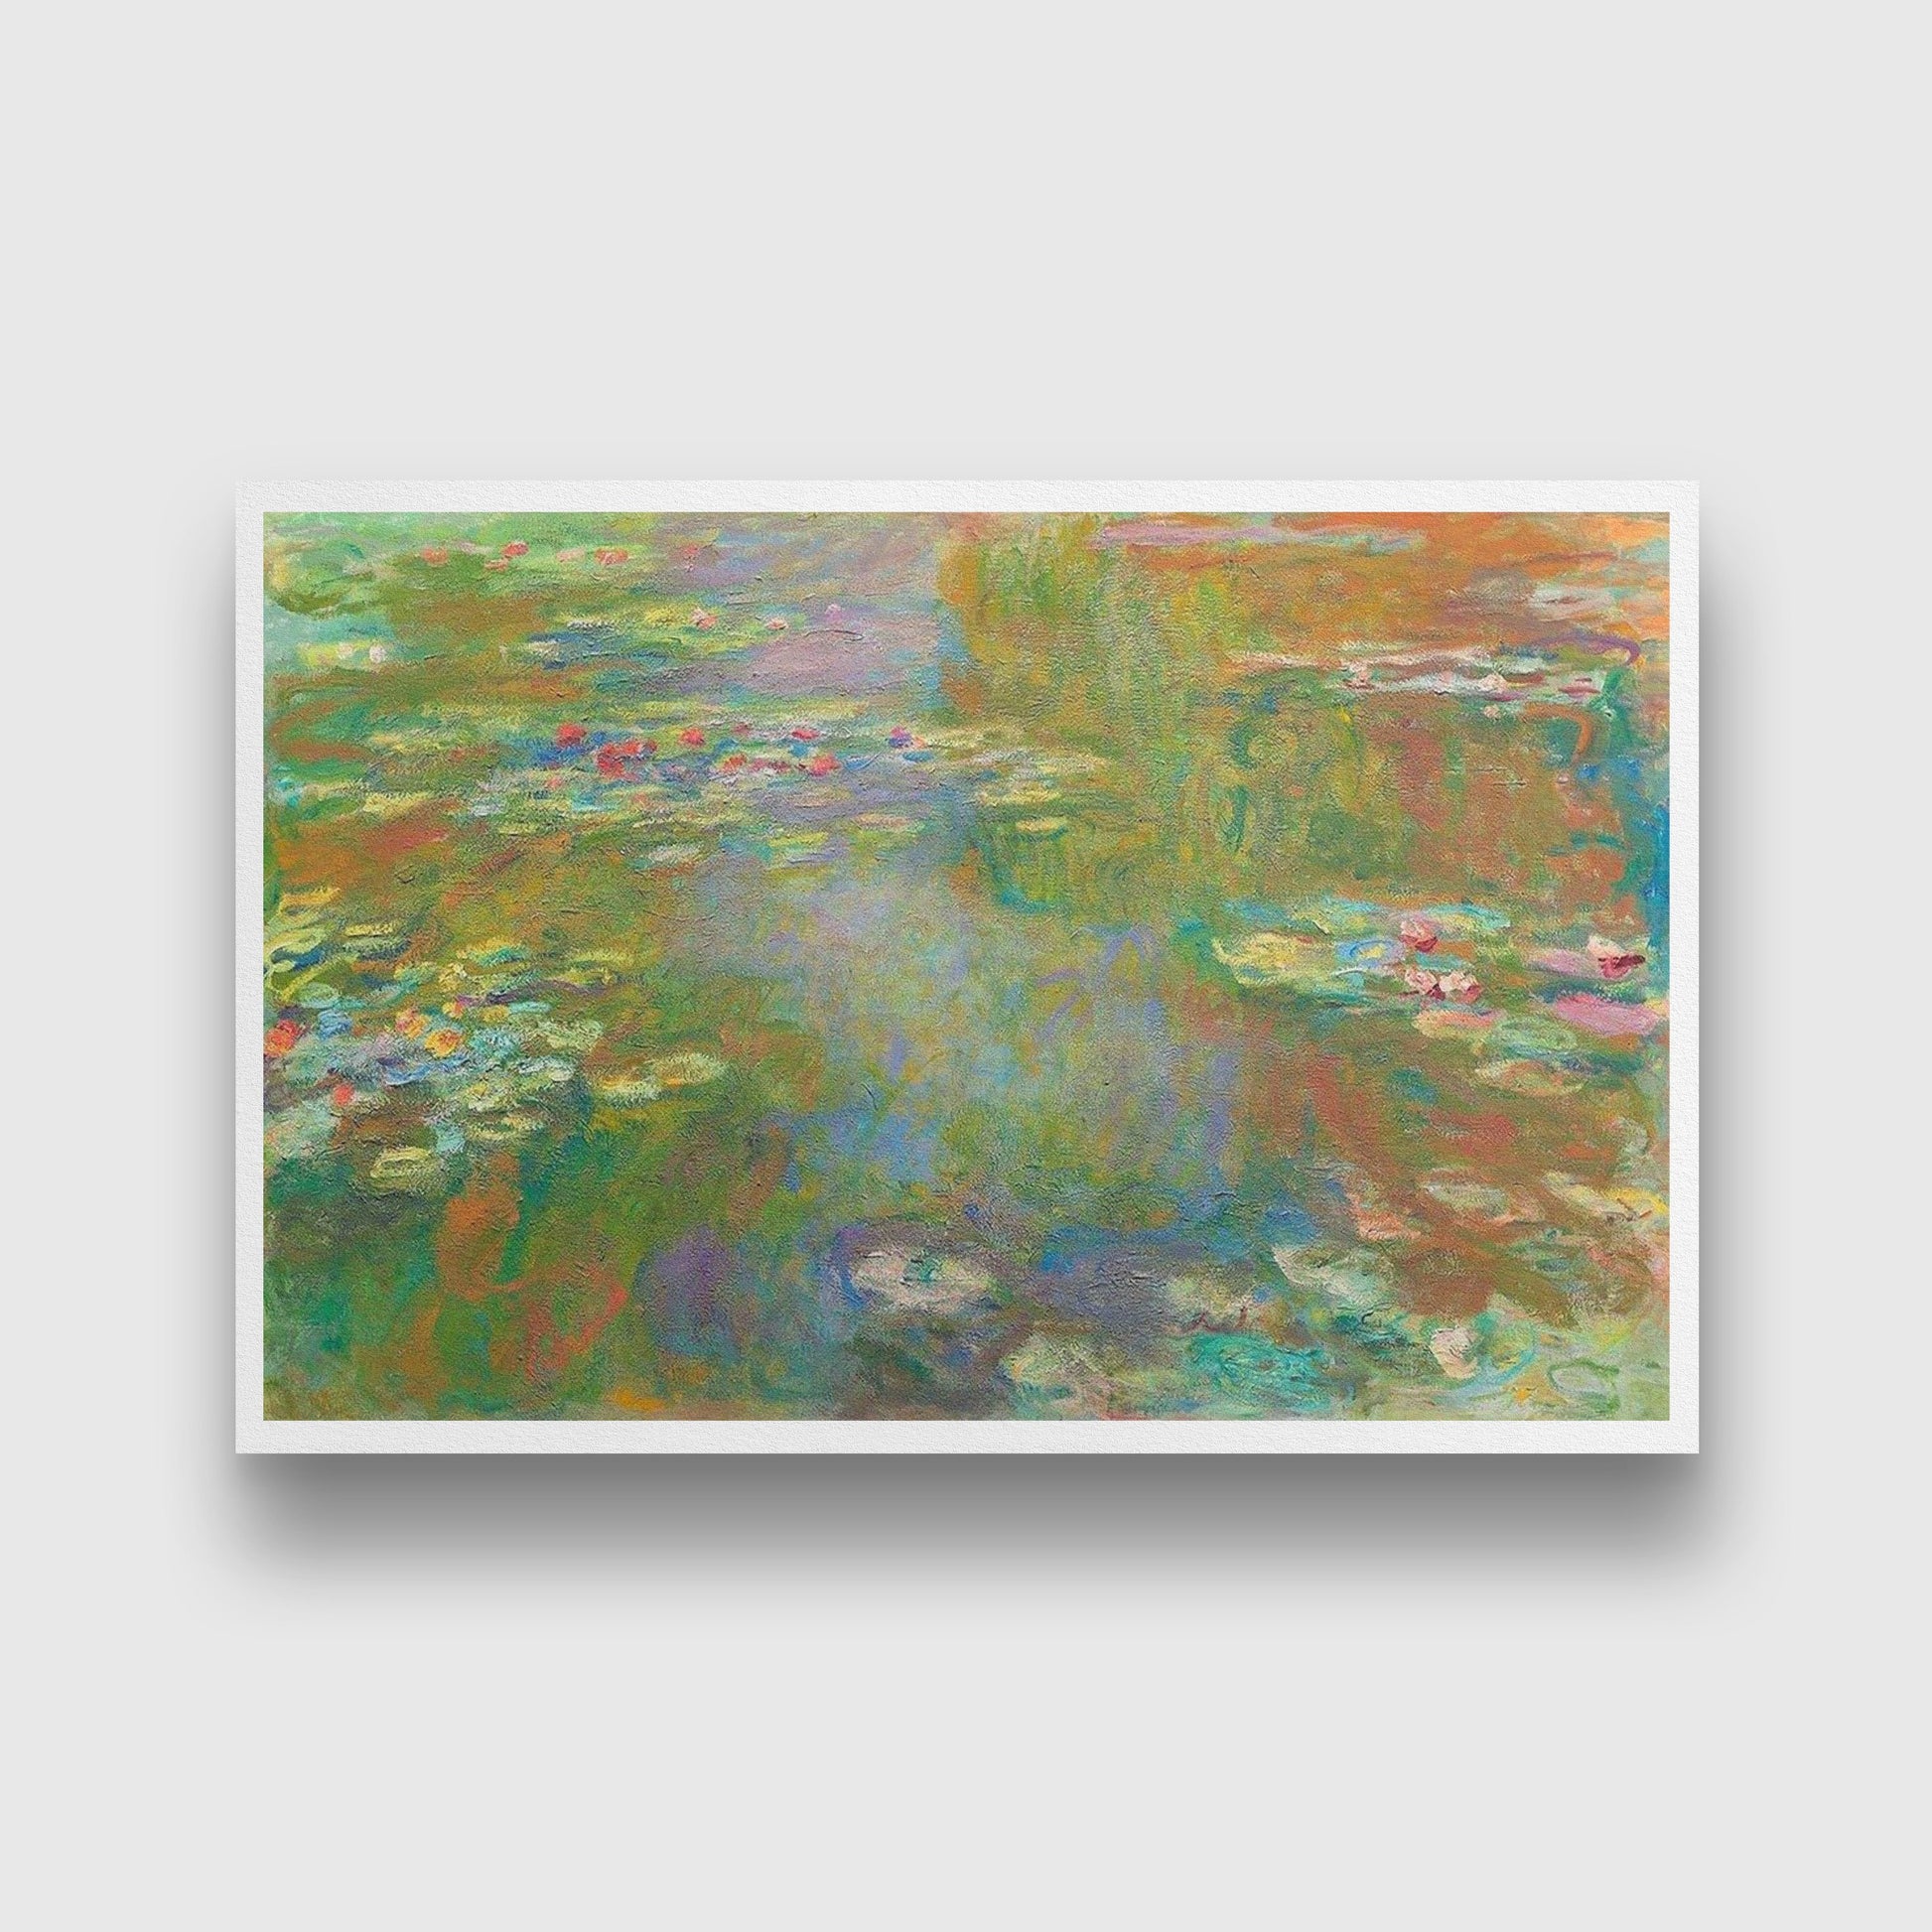 The Water Lily Pond By Claude Monet Painting - Meri Deewar - MeriDeewar